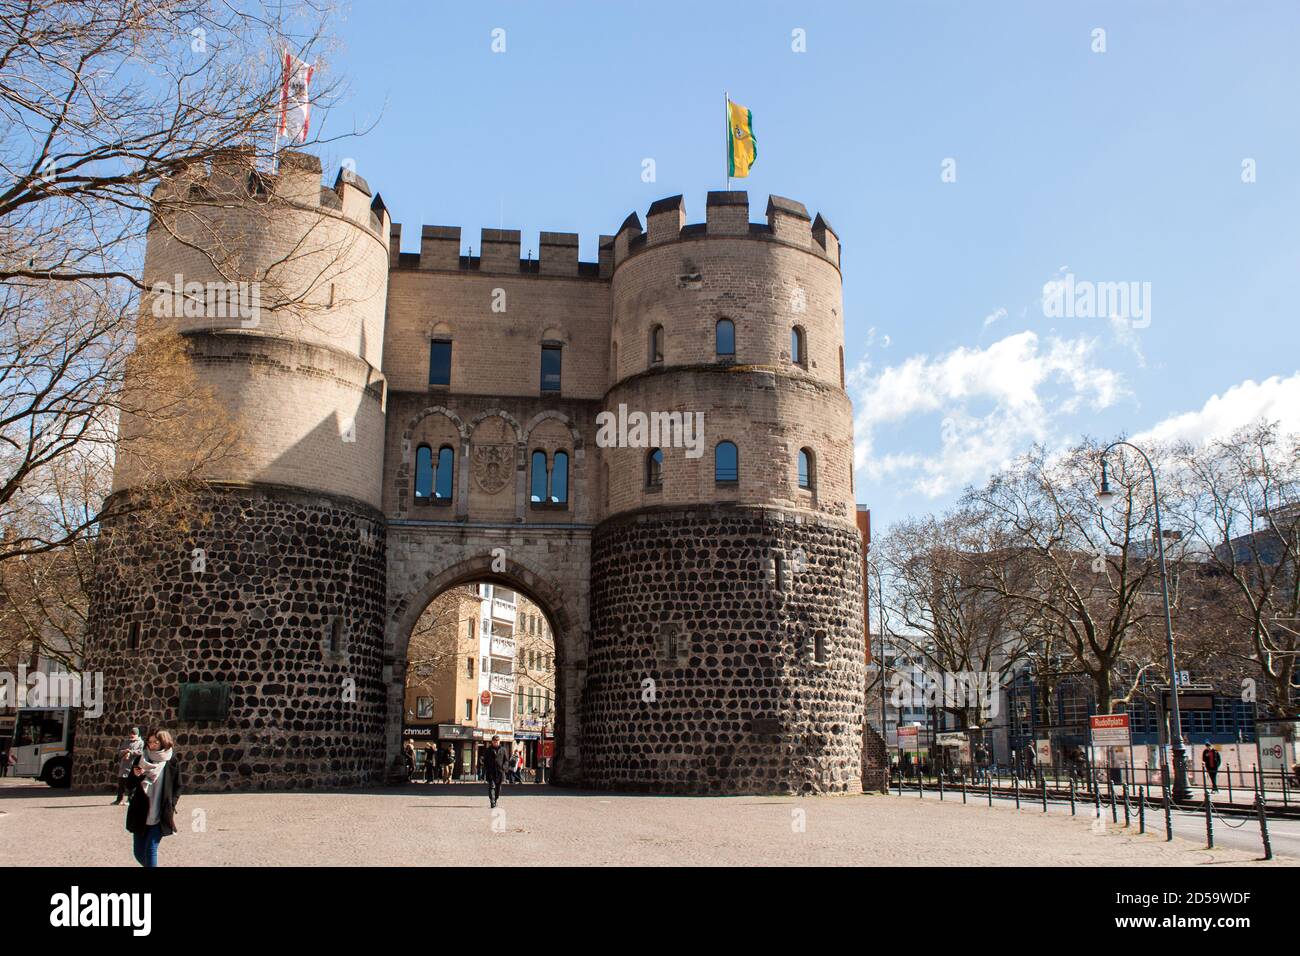 Porta medievale della città con due torri rotonde, parte del muro di difesa della città vecchia di Colonia Foto Stock